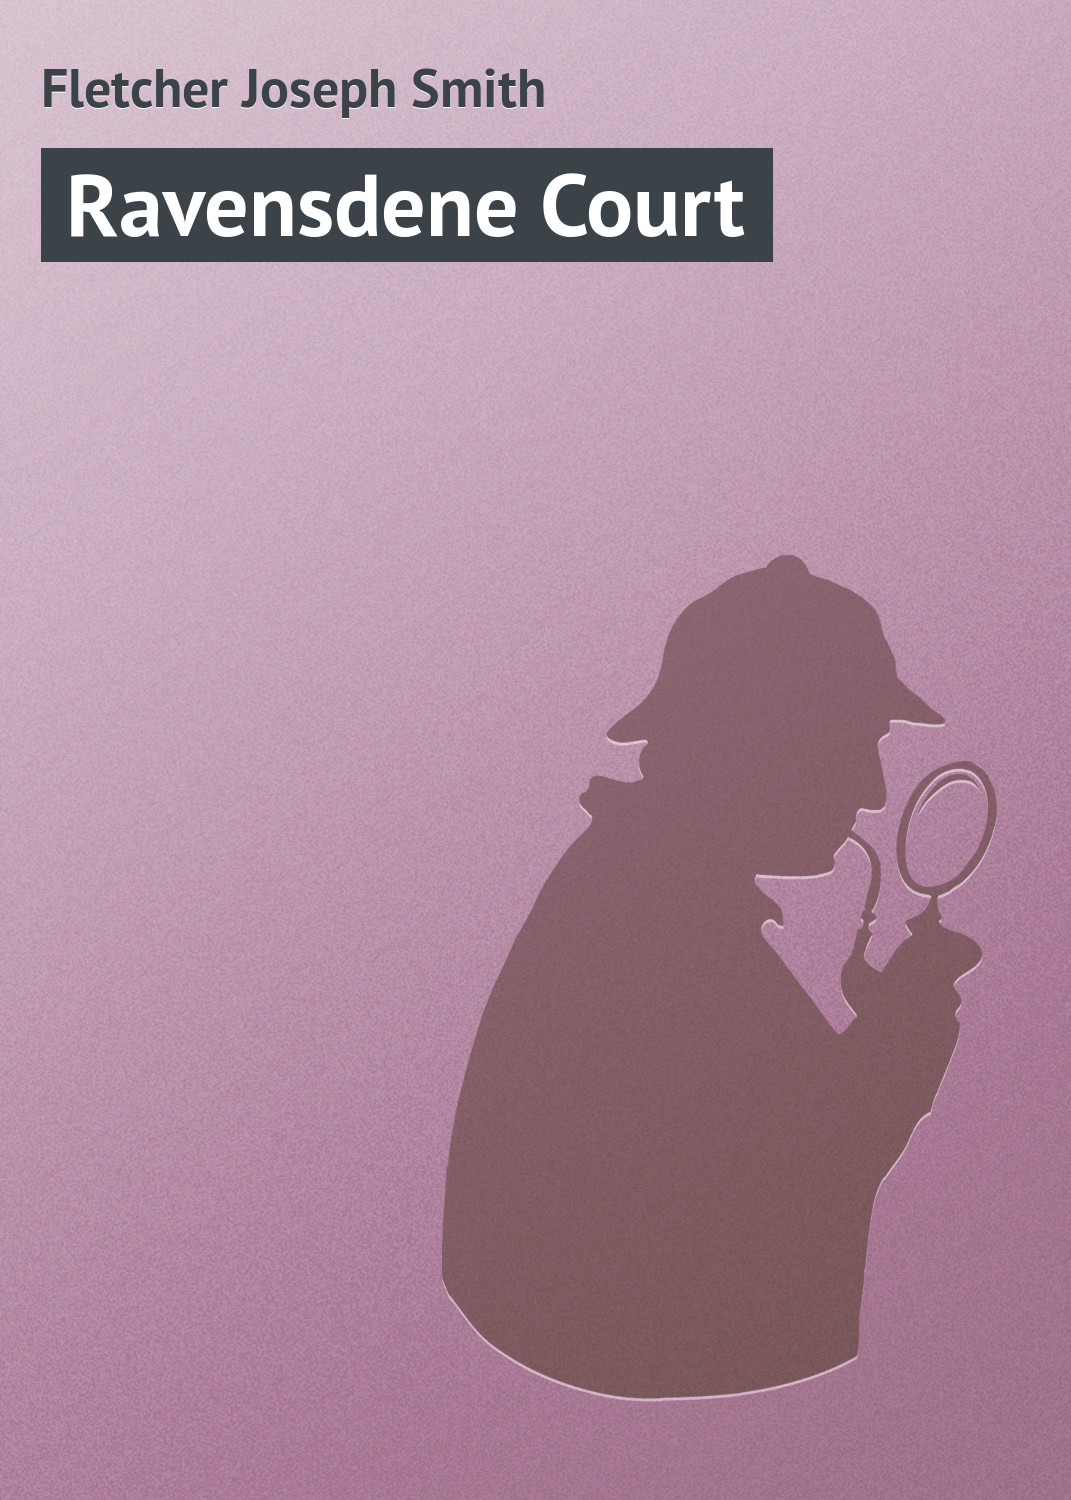 Книга Ravensdene Court из серии , созданная Joseph Fletcher, может относится к жанру Классические детективы, Зарубежные детективы, Зарубежная классика, Иностранные языки. Стоимость электронной книги Ravensdene Court с идентификатором 23159827 составляет 5.99 руб.